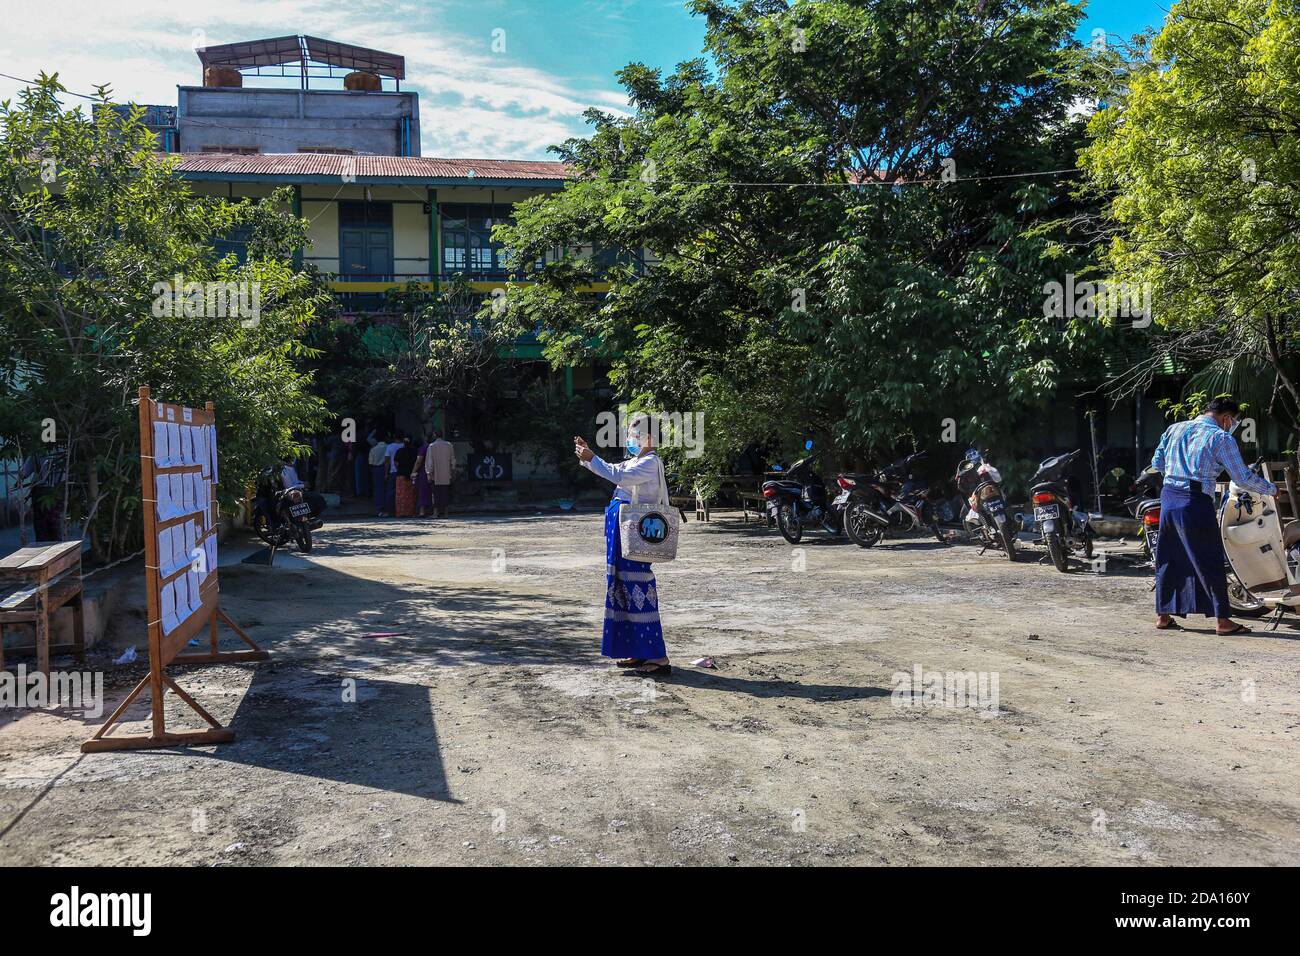 Mandalay, Myanmar. 08 novembre 2020. Une femme prend une photo de la liste des électeurs avec son téléphone.les citoyens du Myanmar ont voté lors de la deuxième élection démocratique depuis la fin du régime militaire avec la Ligue nationale pour la démocratie (NLD) Aung San Suu Kyi qui devrait remporter l'élection. Crédit : SOPA Images Limited/Alamy Live News Banque D'Images